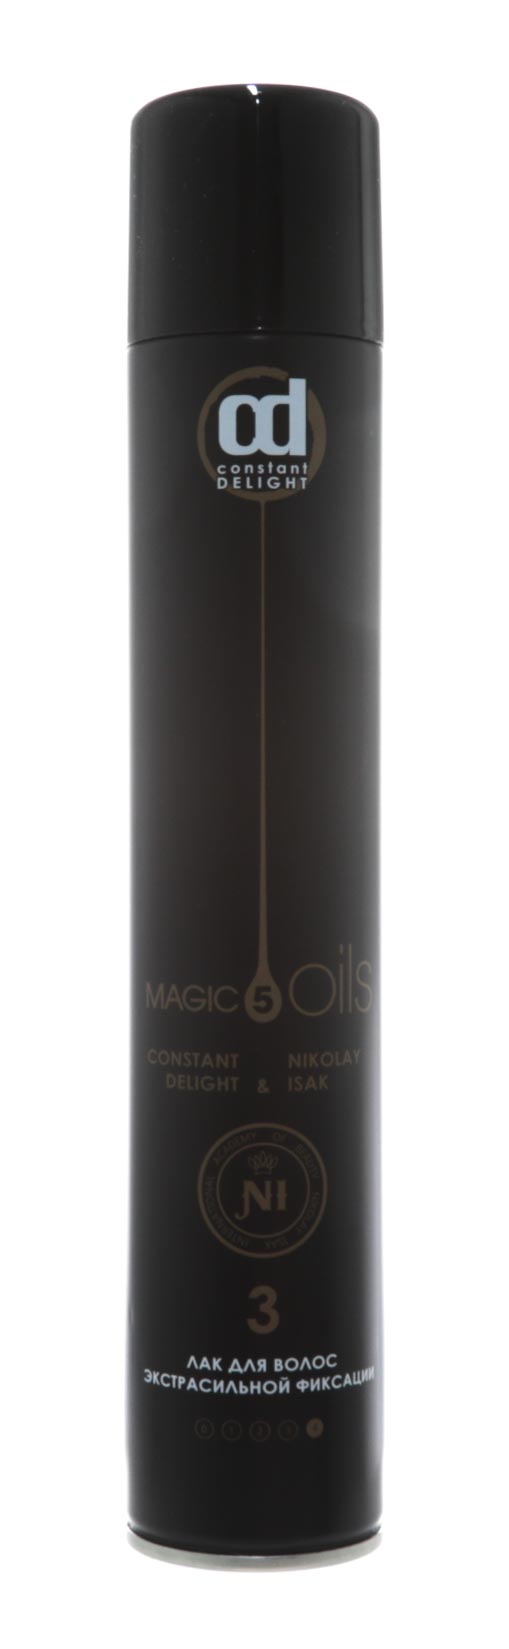 Constant Delight Лак для волос экстрасильной фиксации без запаха №3, 400 мл Черный (Constant Delight, 5 Magic Oils)